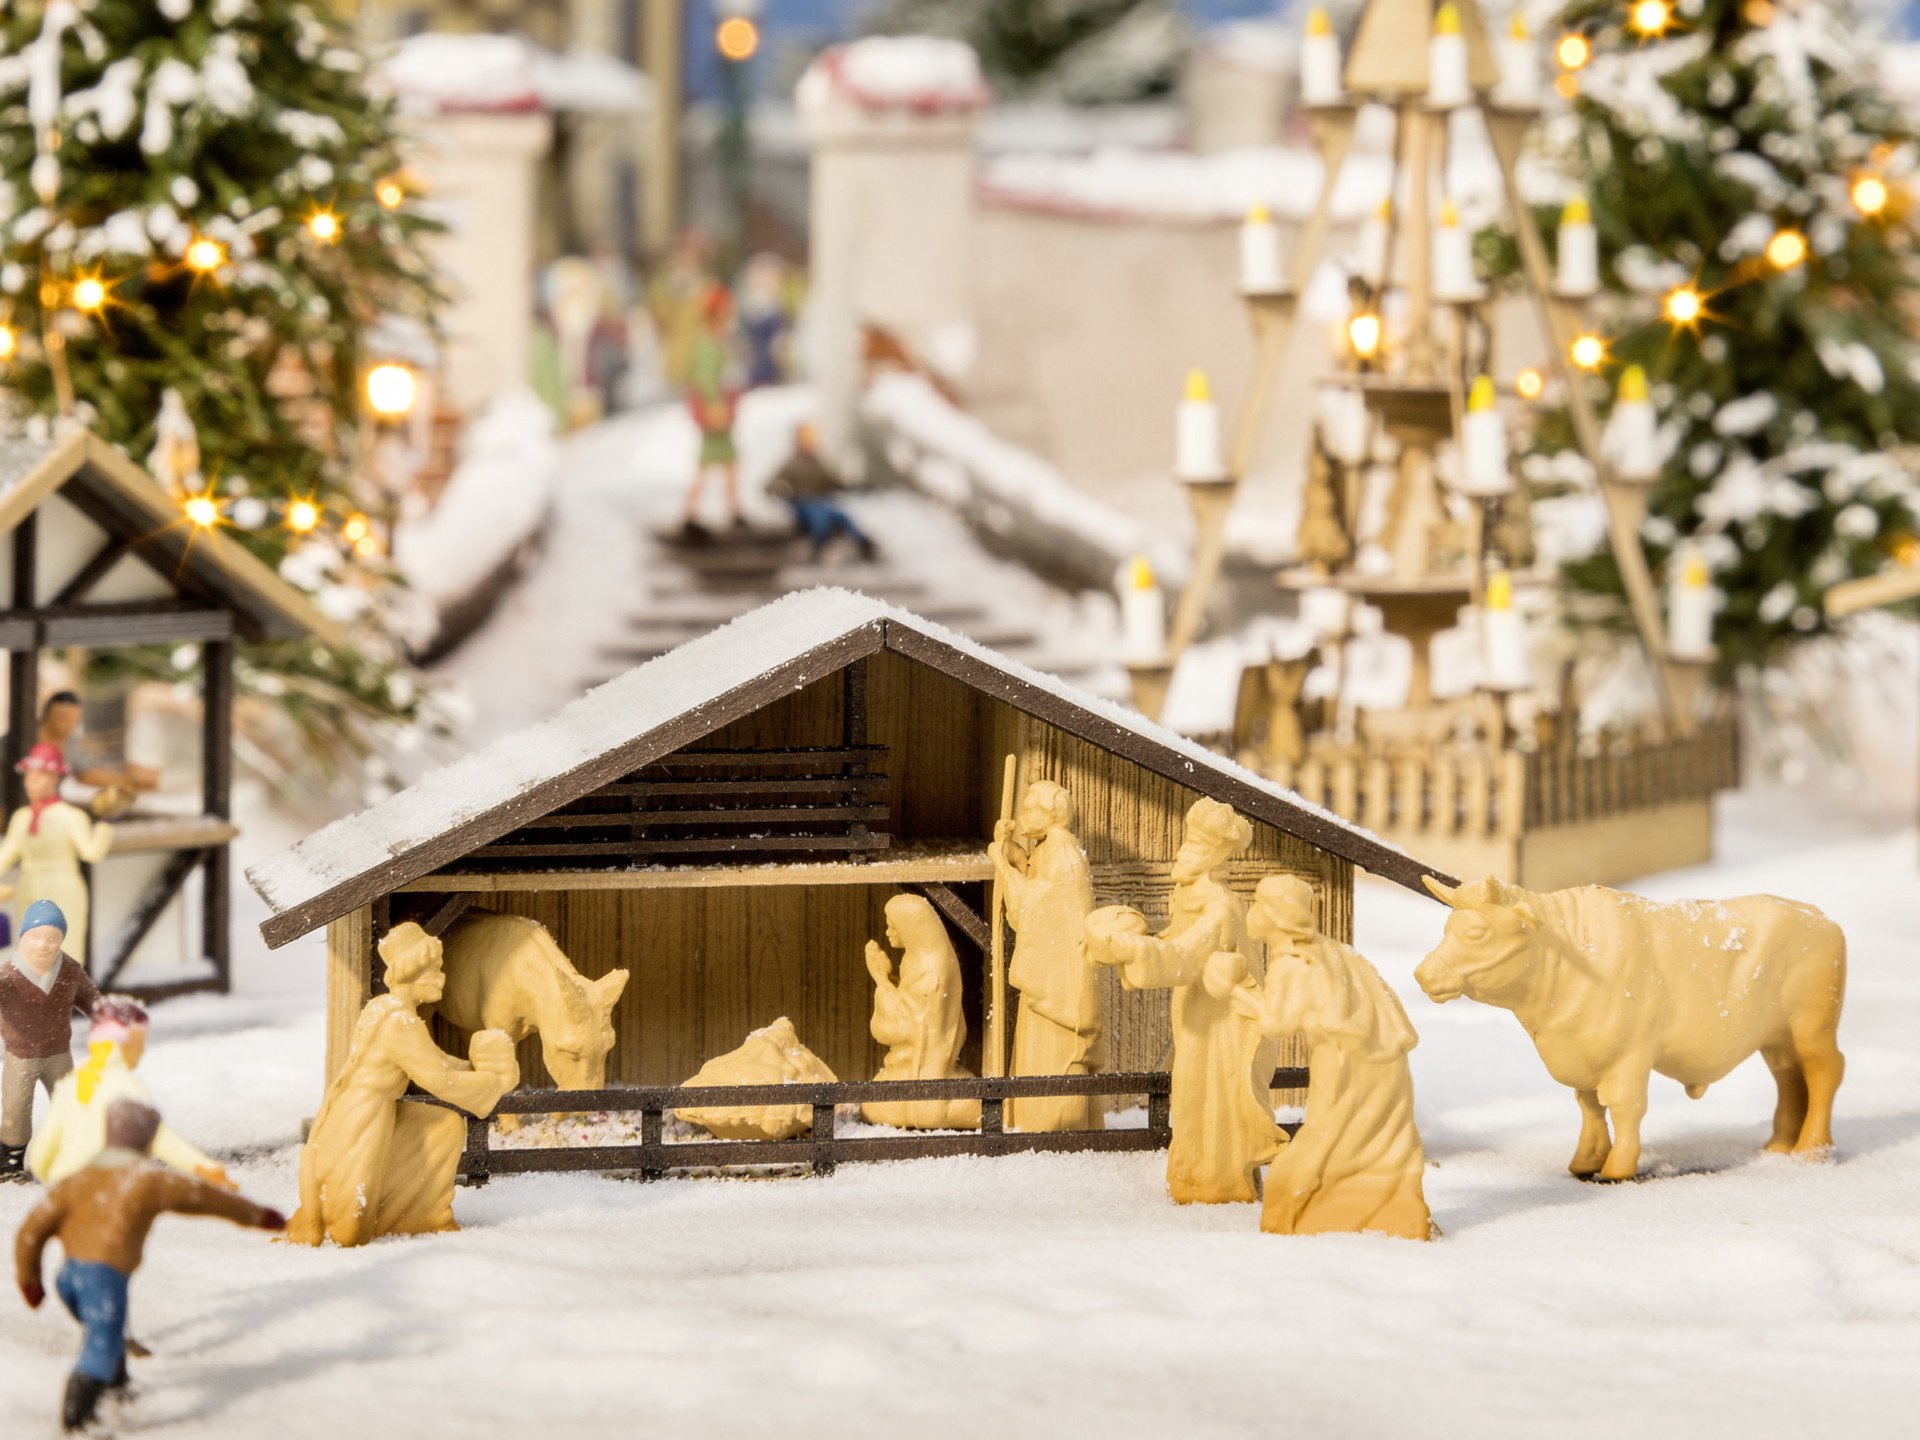 Weihnachtsmarkt-Krippe mit Figuren in Holzoptik